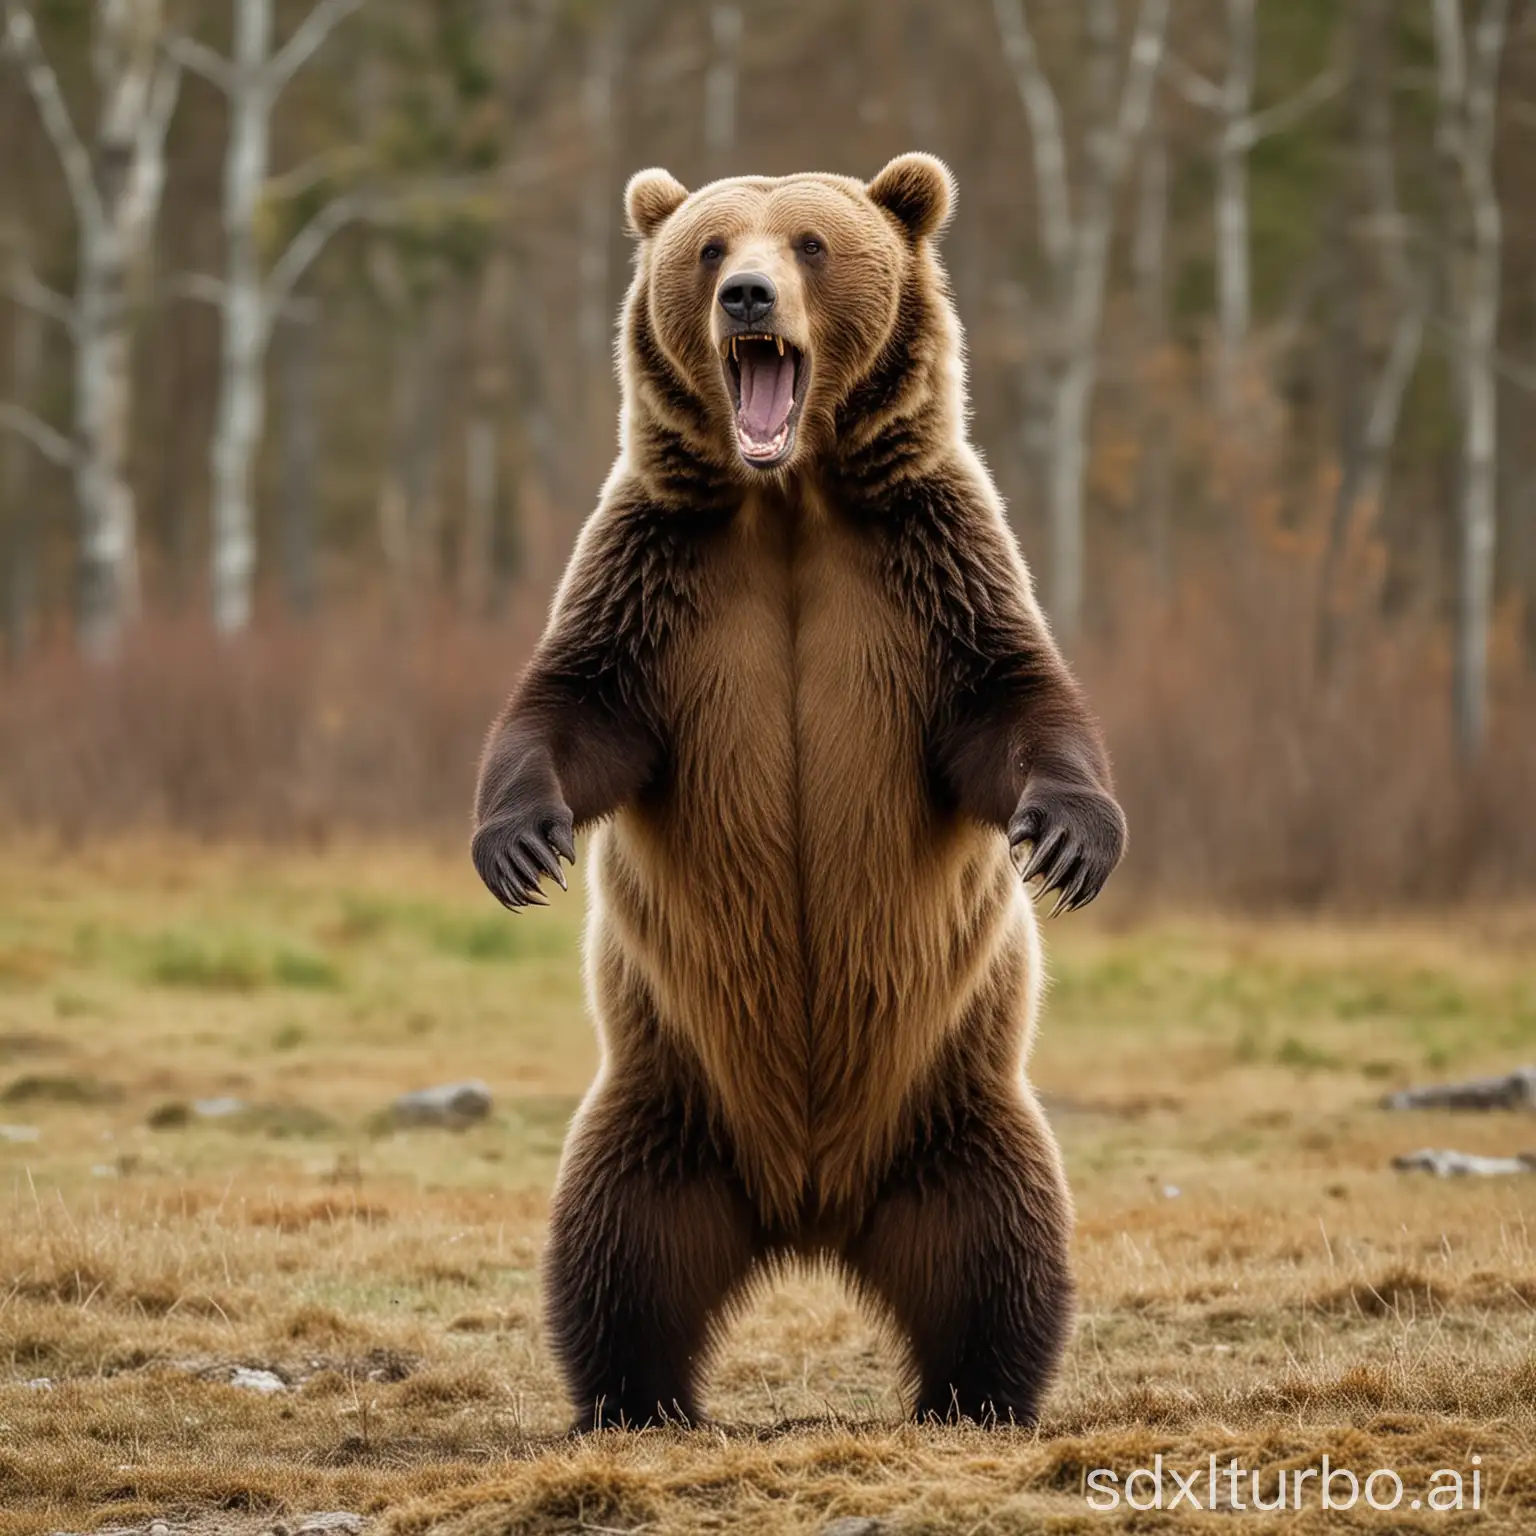 Brown bear, standing, roaring, standing on legs